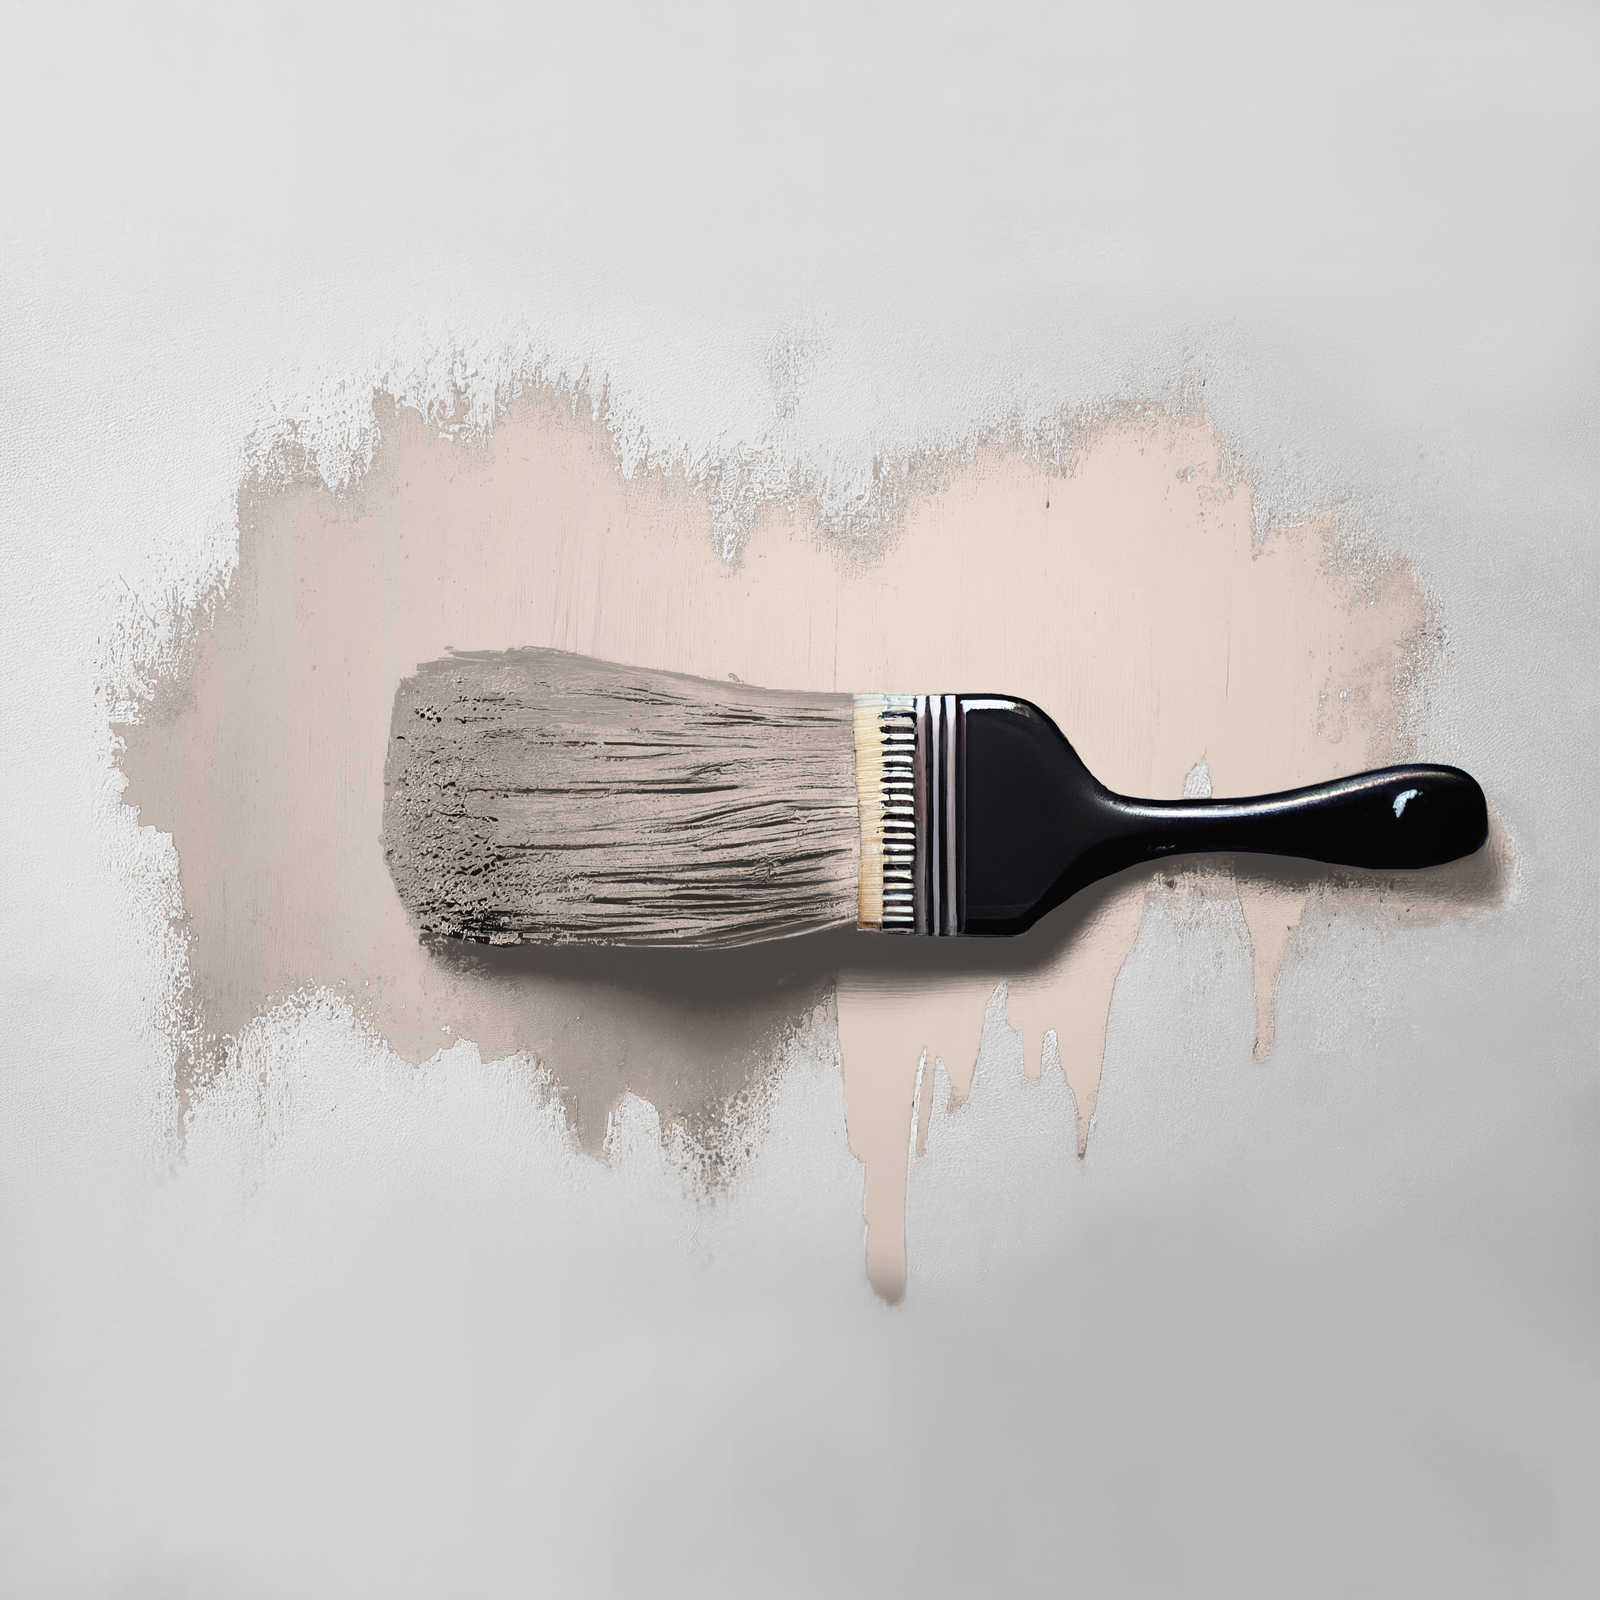             Wall Paint TCK7000 »Himalaya Salt« in lovely beige – 5.0 litre
        